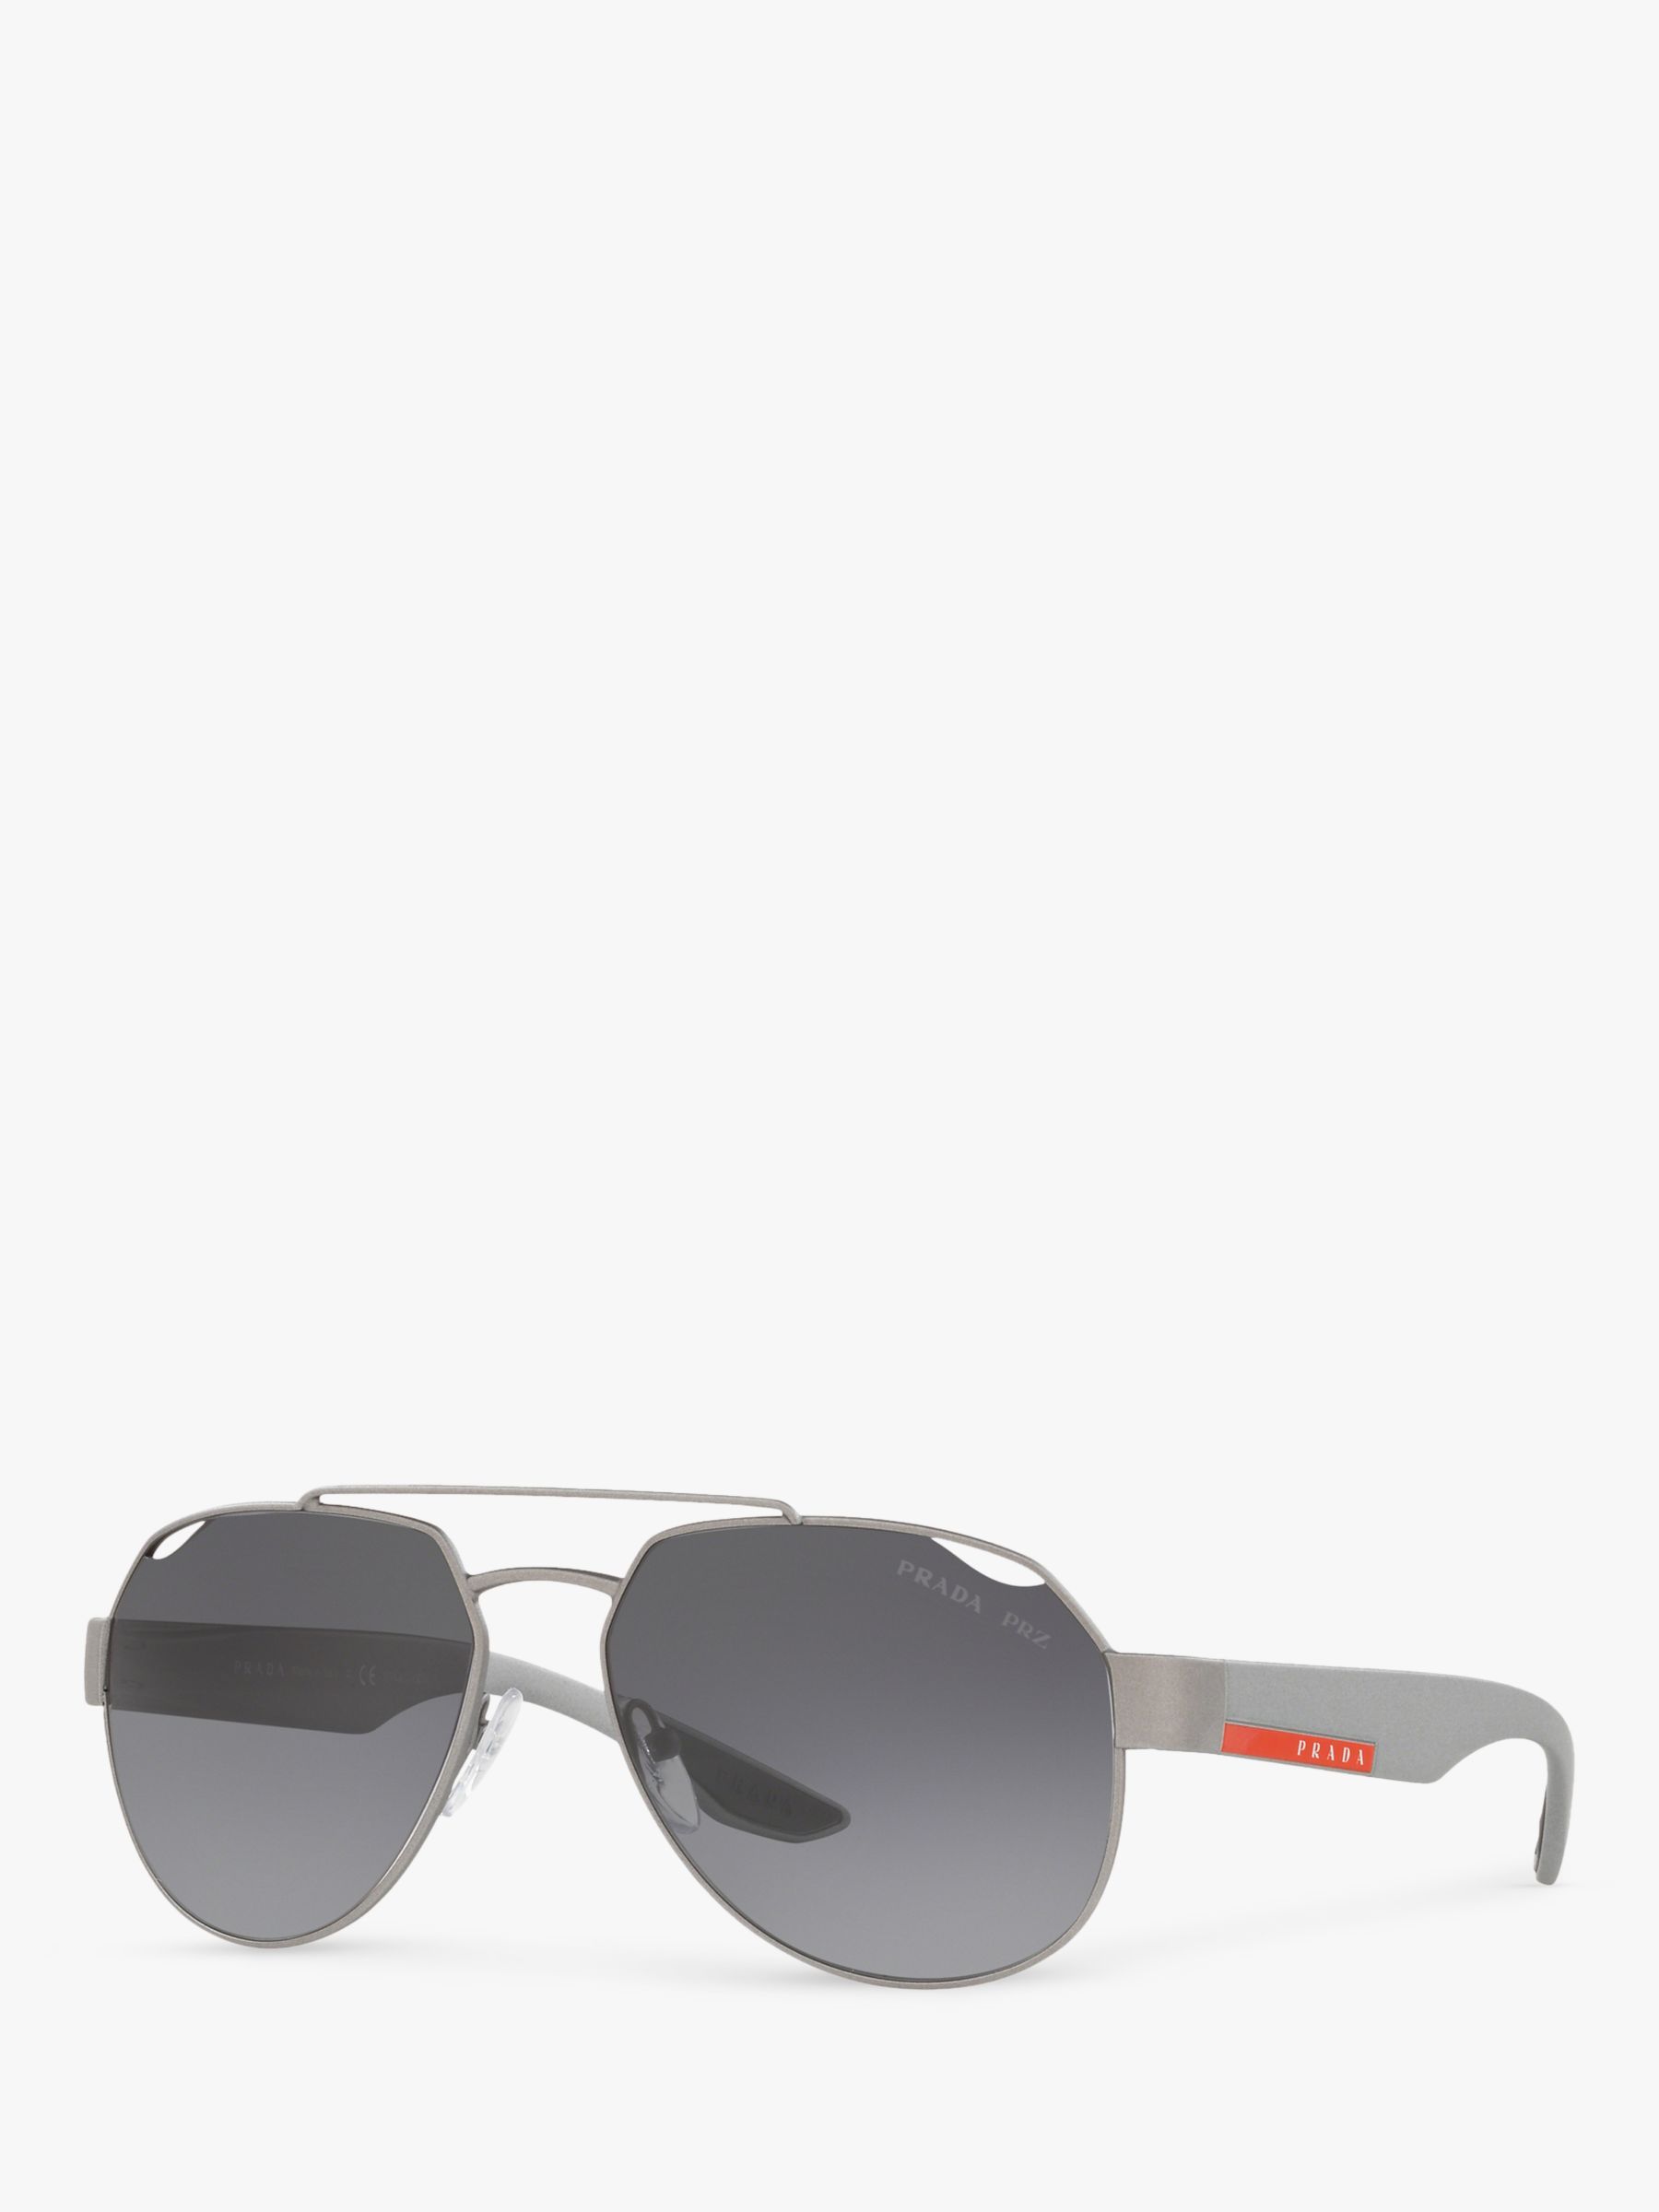 Prada PS 57US Men's Polarised Rectangular Sunglasses